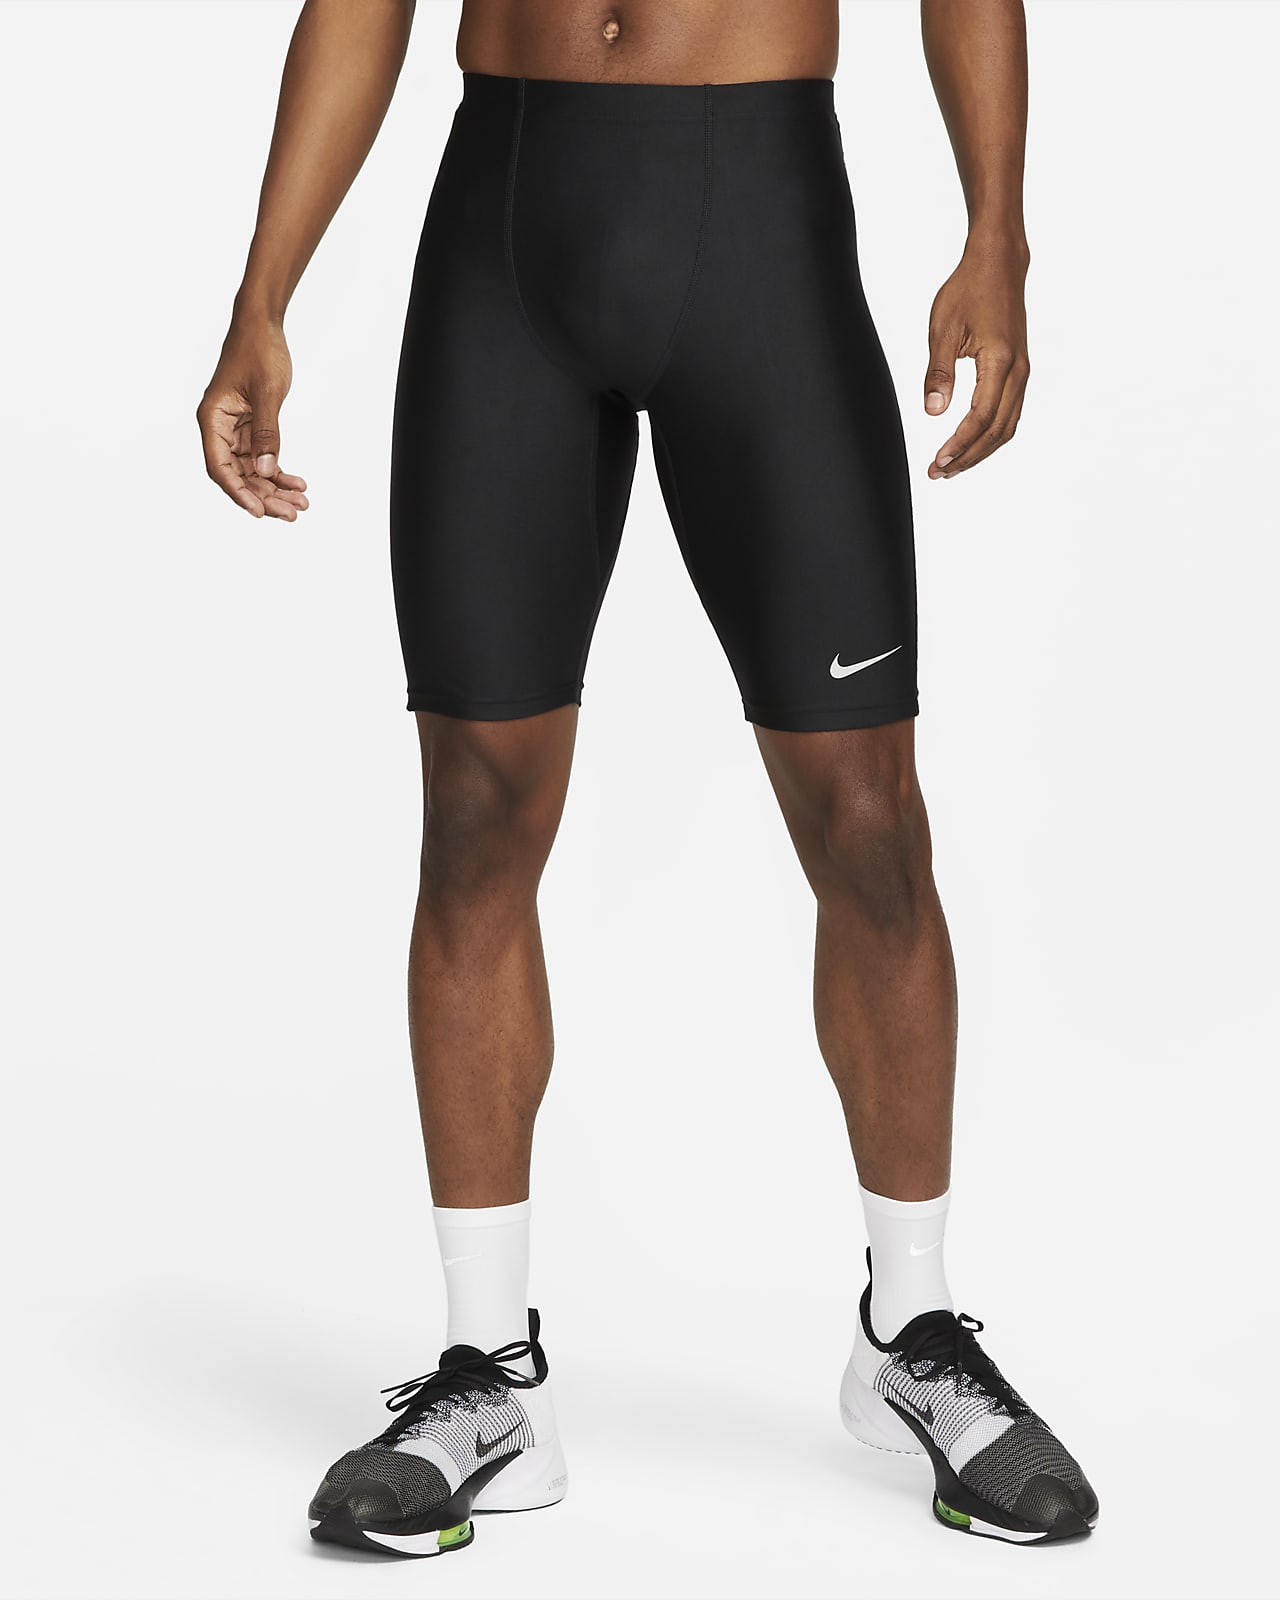 Nike Dri-FIT Fast-løbetights i halv længde mænd. Nike